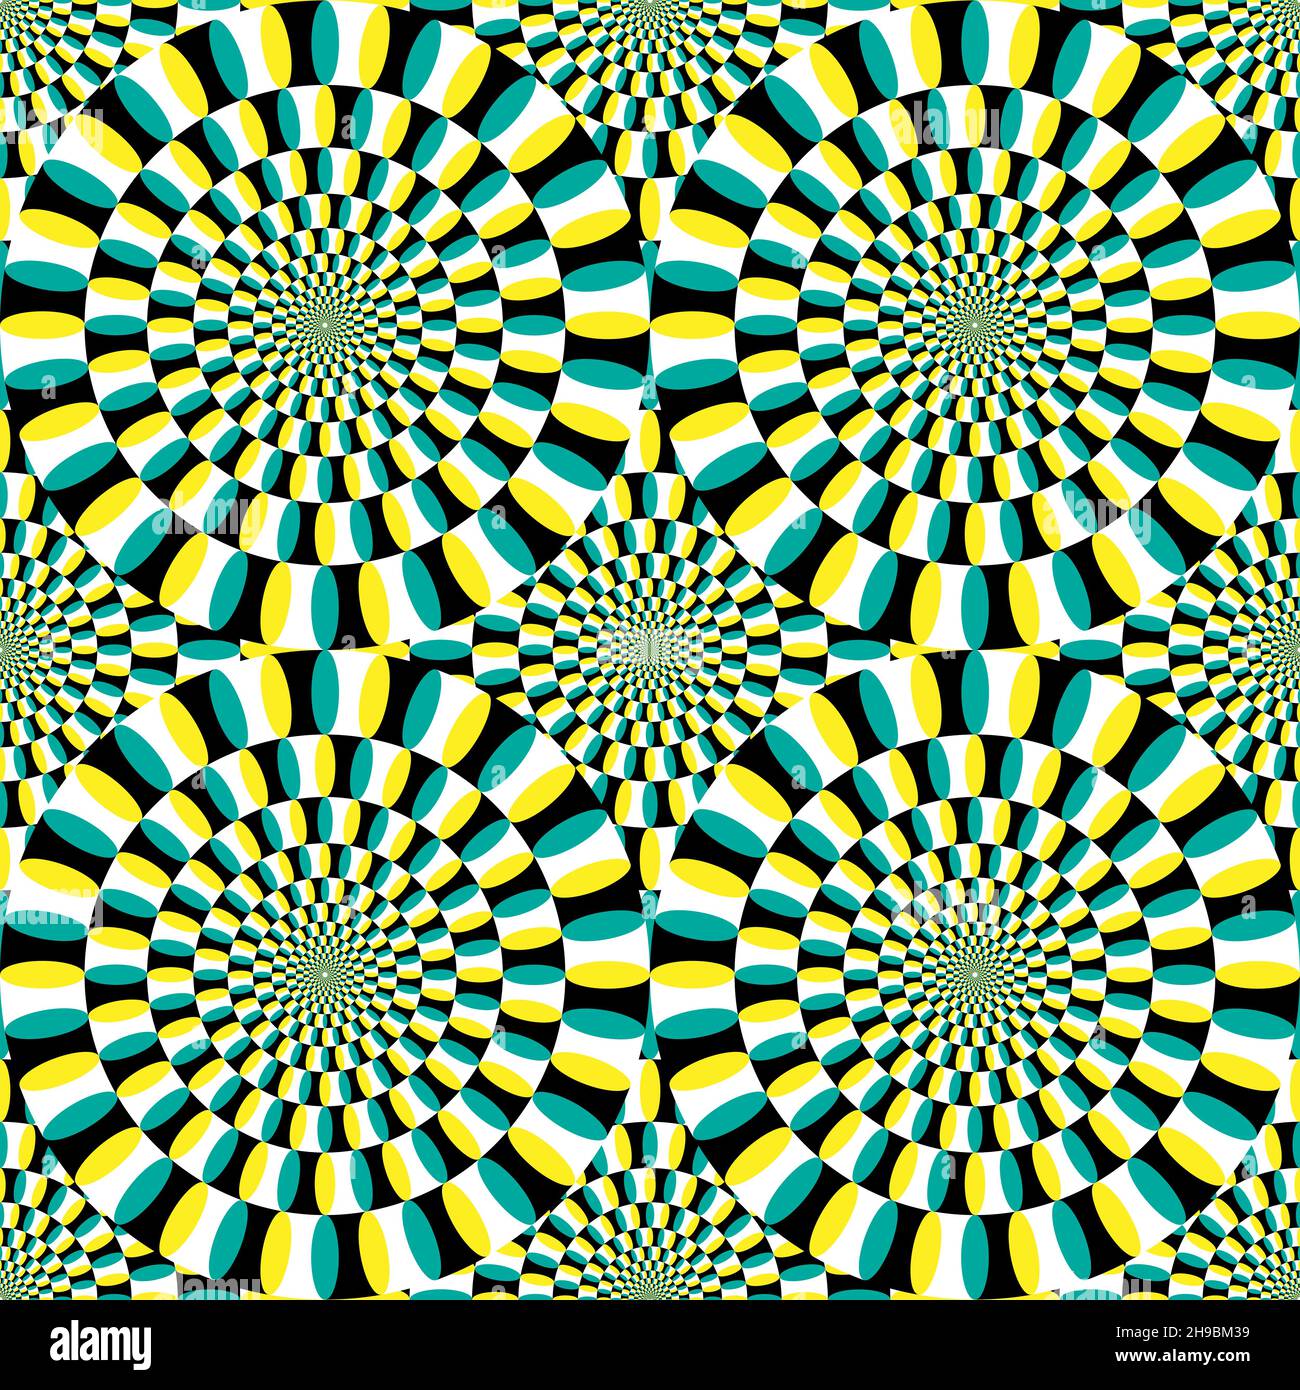 Vektor der optischen Täuschung. Kreisförmiges Design in gelb, grün, schwarz und weiß. Konzentrische Kreise, die das Auge dazu verleiten, sich drehende Bewegungen zu sehen. EPS10 V Stock Vektor